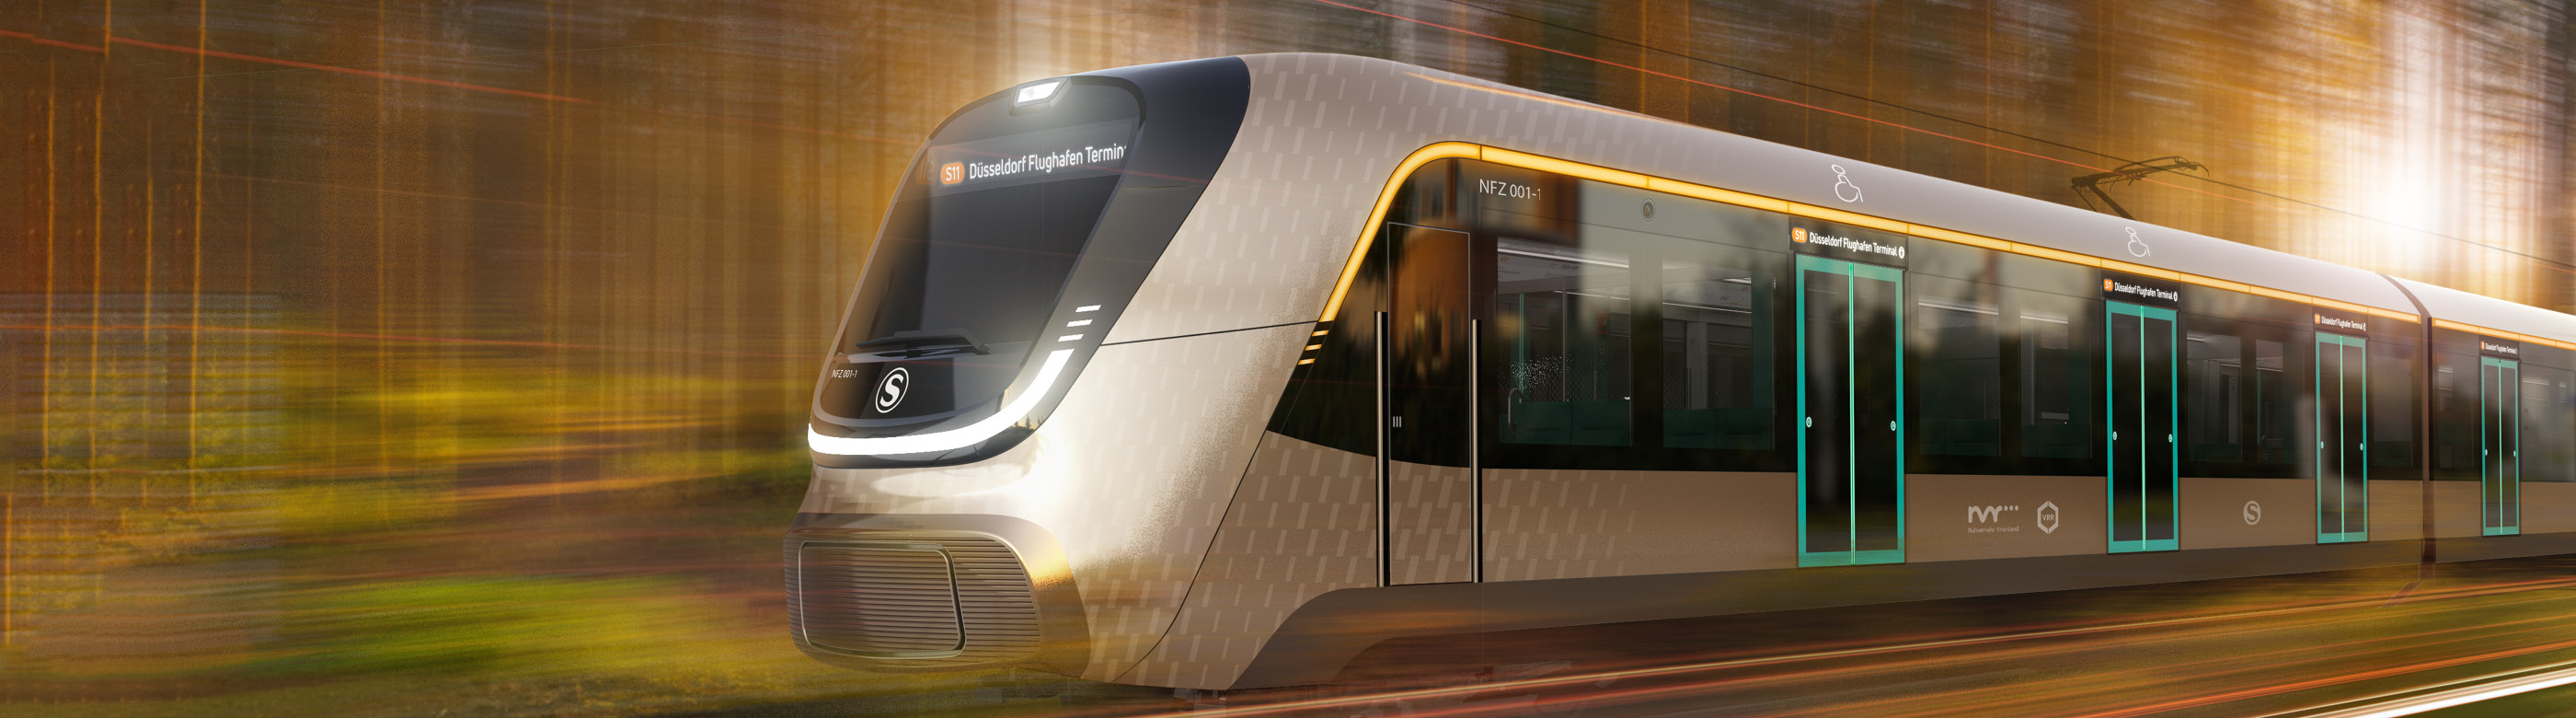 <p>Für die S-Bahn Köln werden Züge gebraucht, die ebenso visionär sind wie das geplante S-Bahn-Netz der Zukunft vom NVR. Dazu hat der NVR nun eine Ausschreibung gestartet.</p>